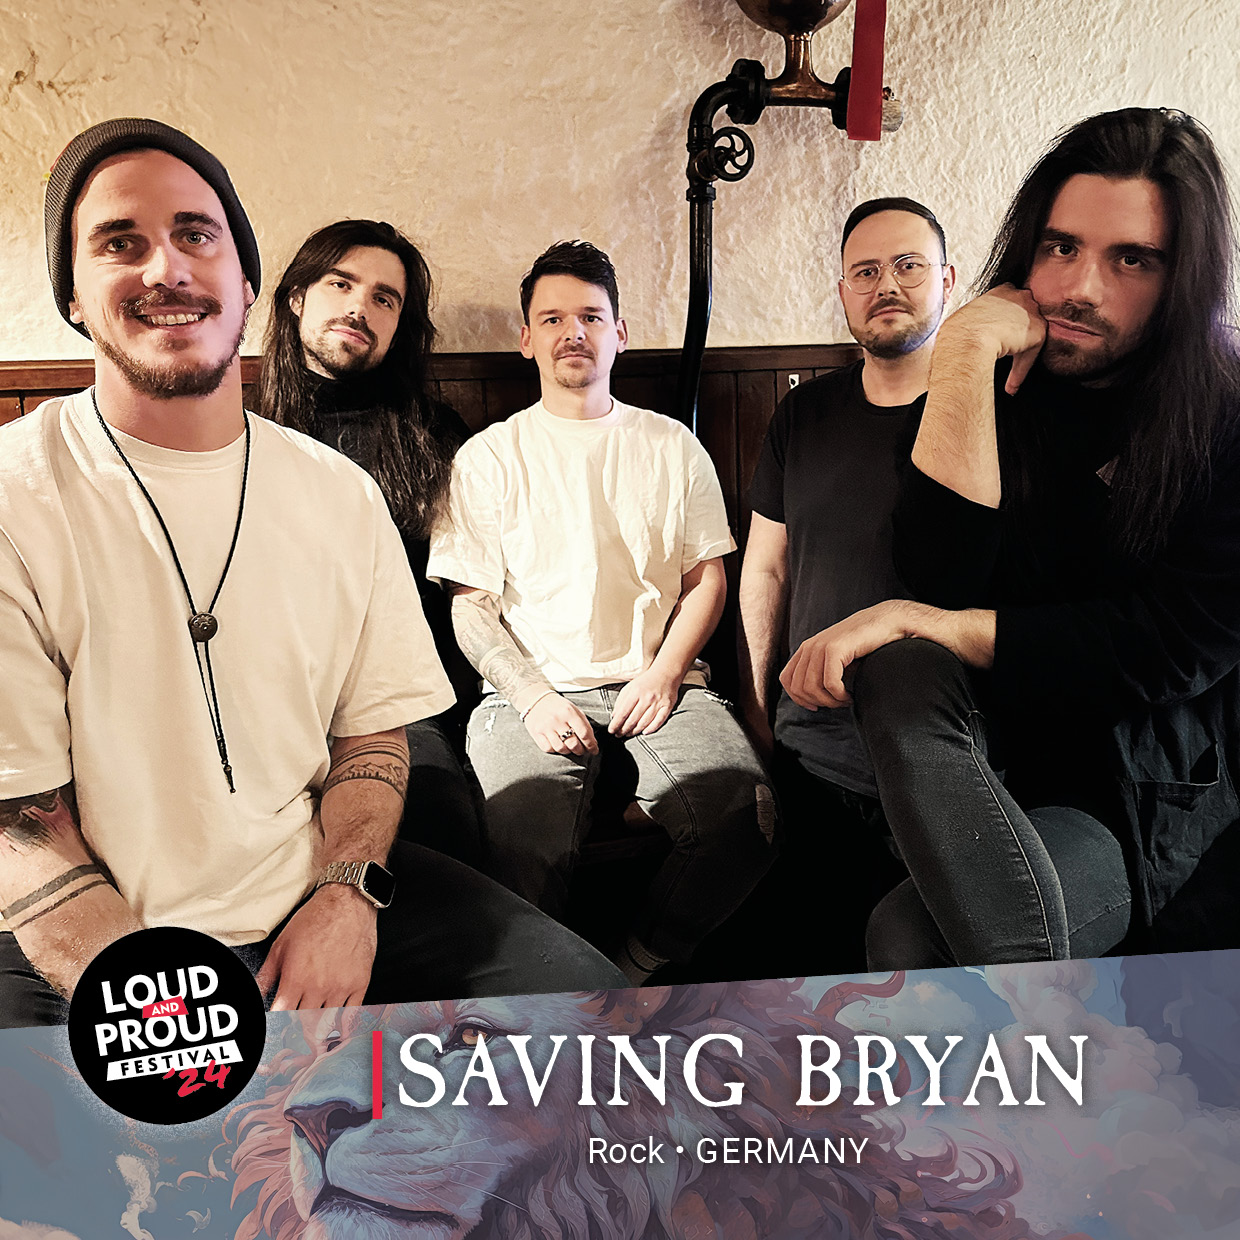 Saving Bryan